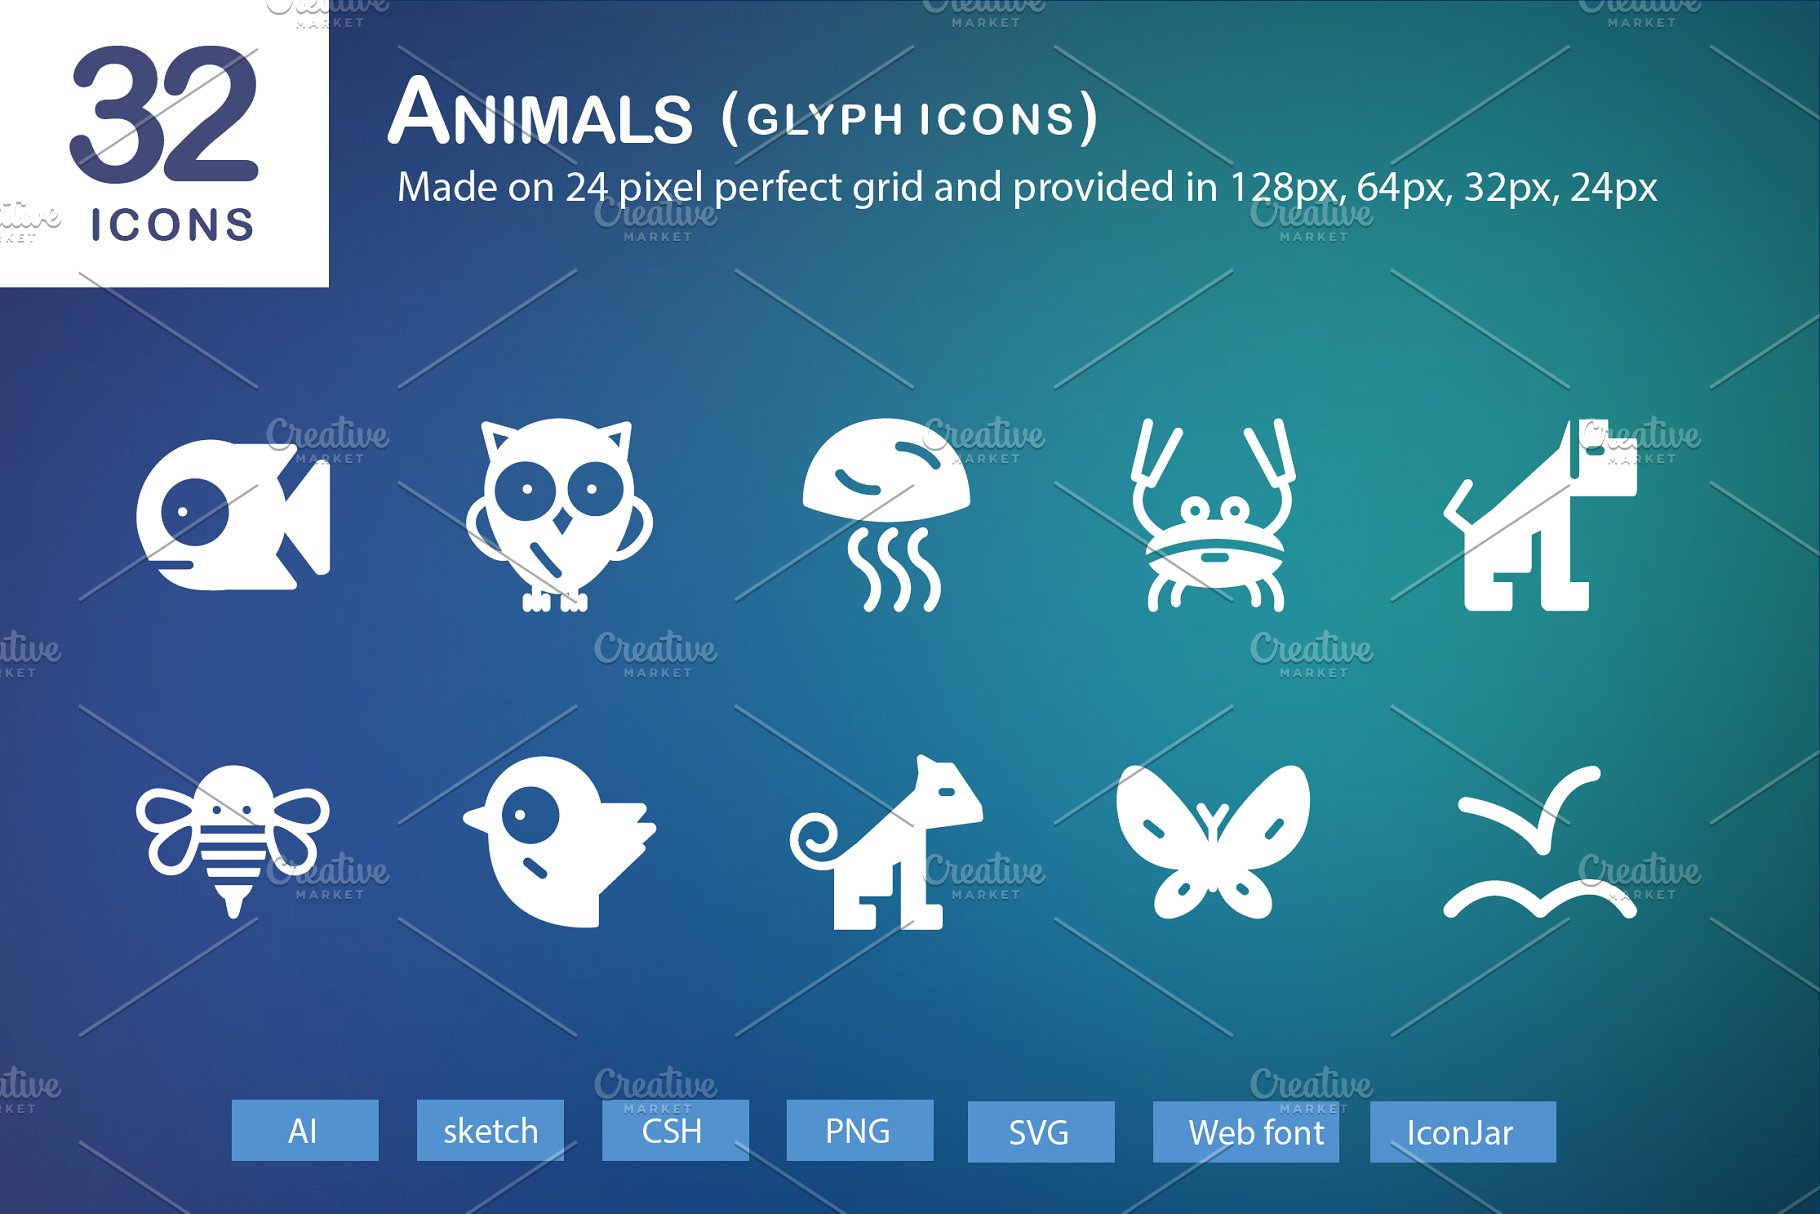 32个可爱单色动物轮廓图标 32 Animals Glyph Icons插图